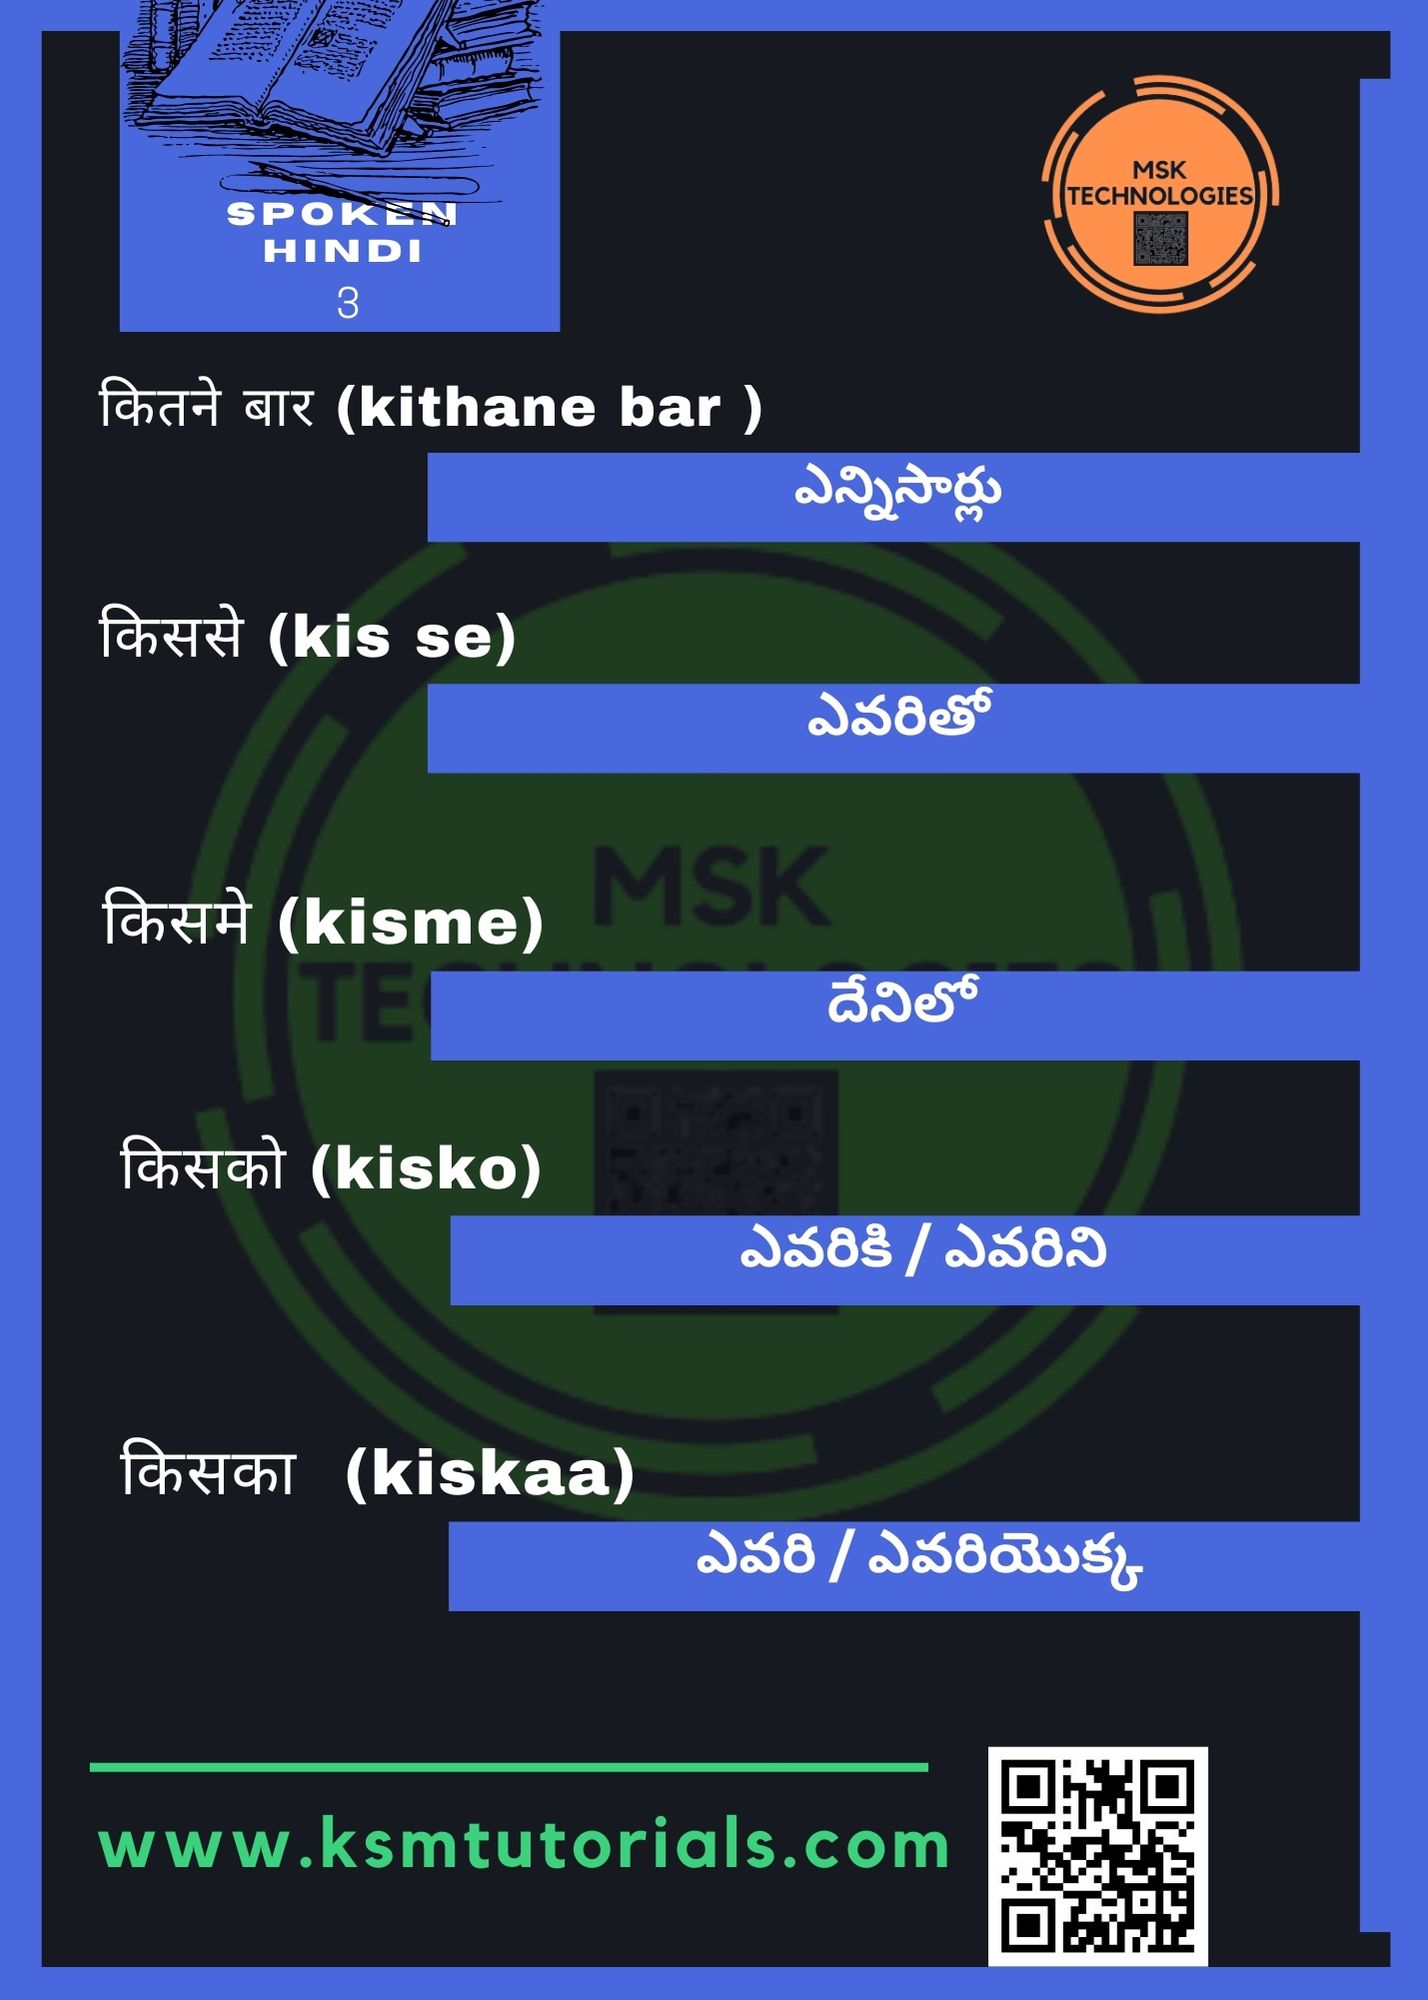 Spoken Hindi Regular Words